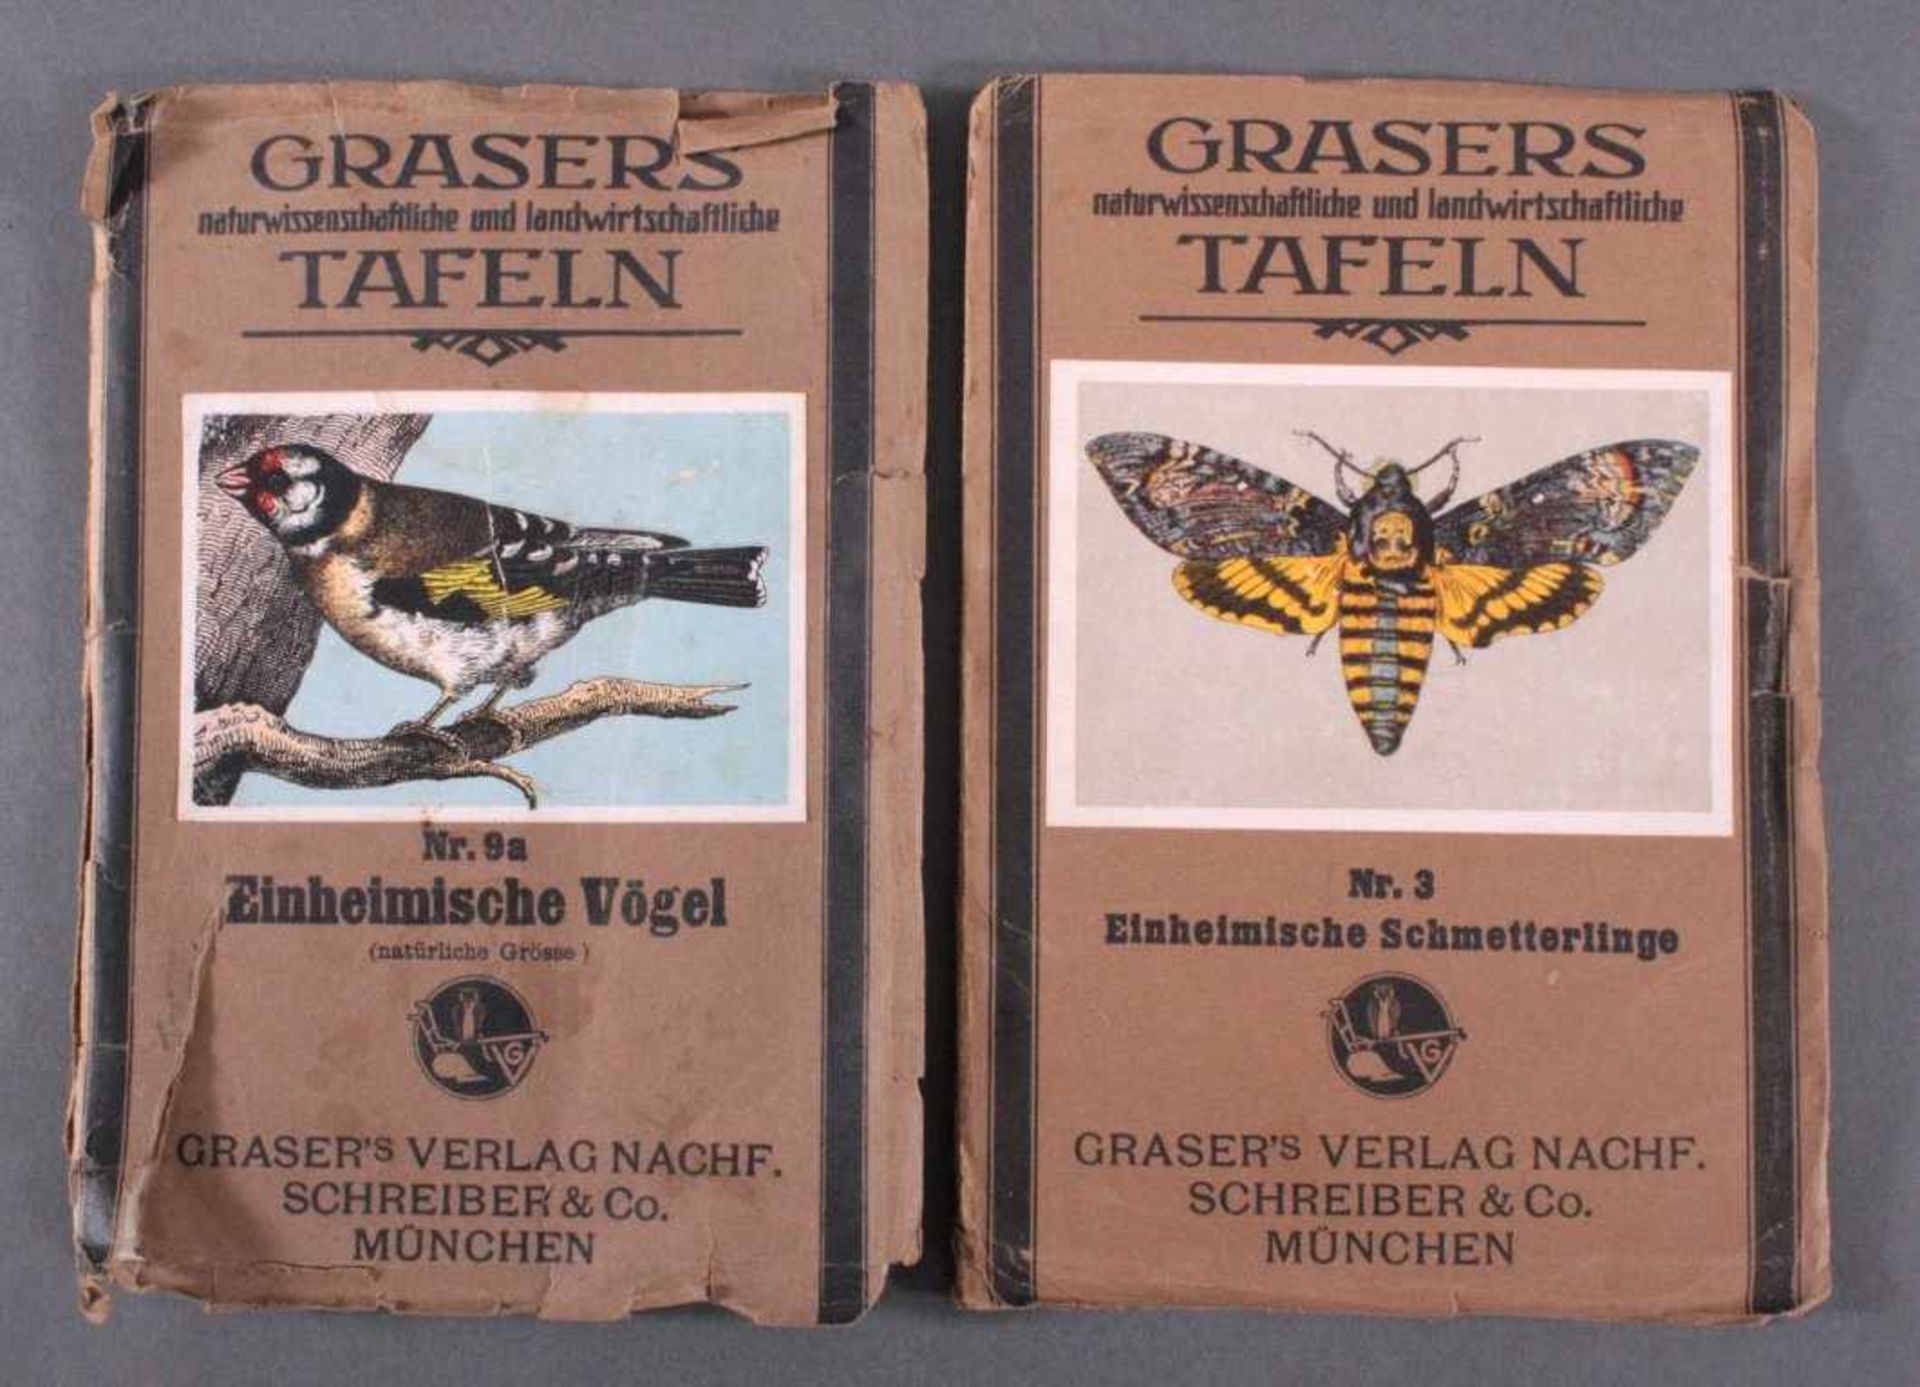 2x Grasers Tafeln1x Nr.3 Einheimische Schmetterlinge.1x Nr.9a Einheimische Vögel.Beide mit starken